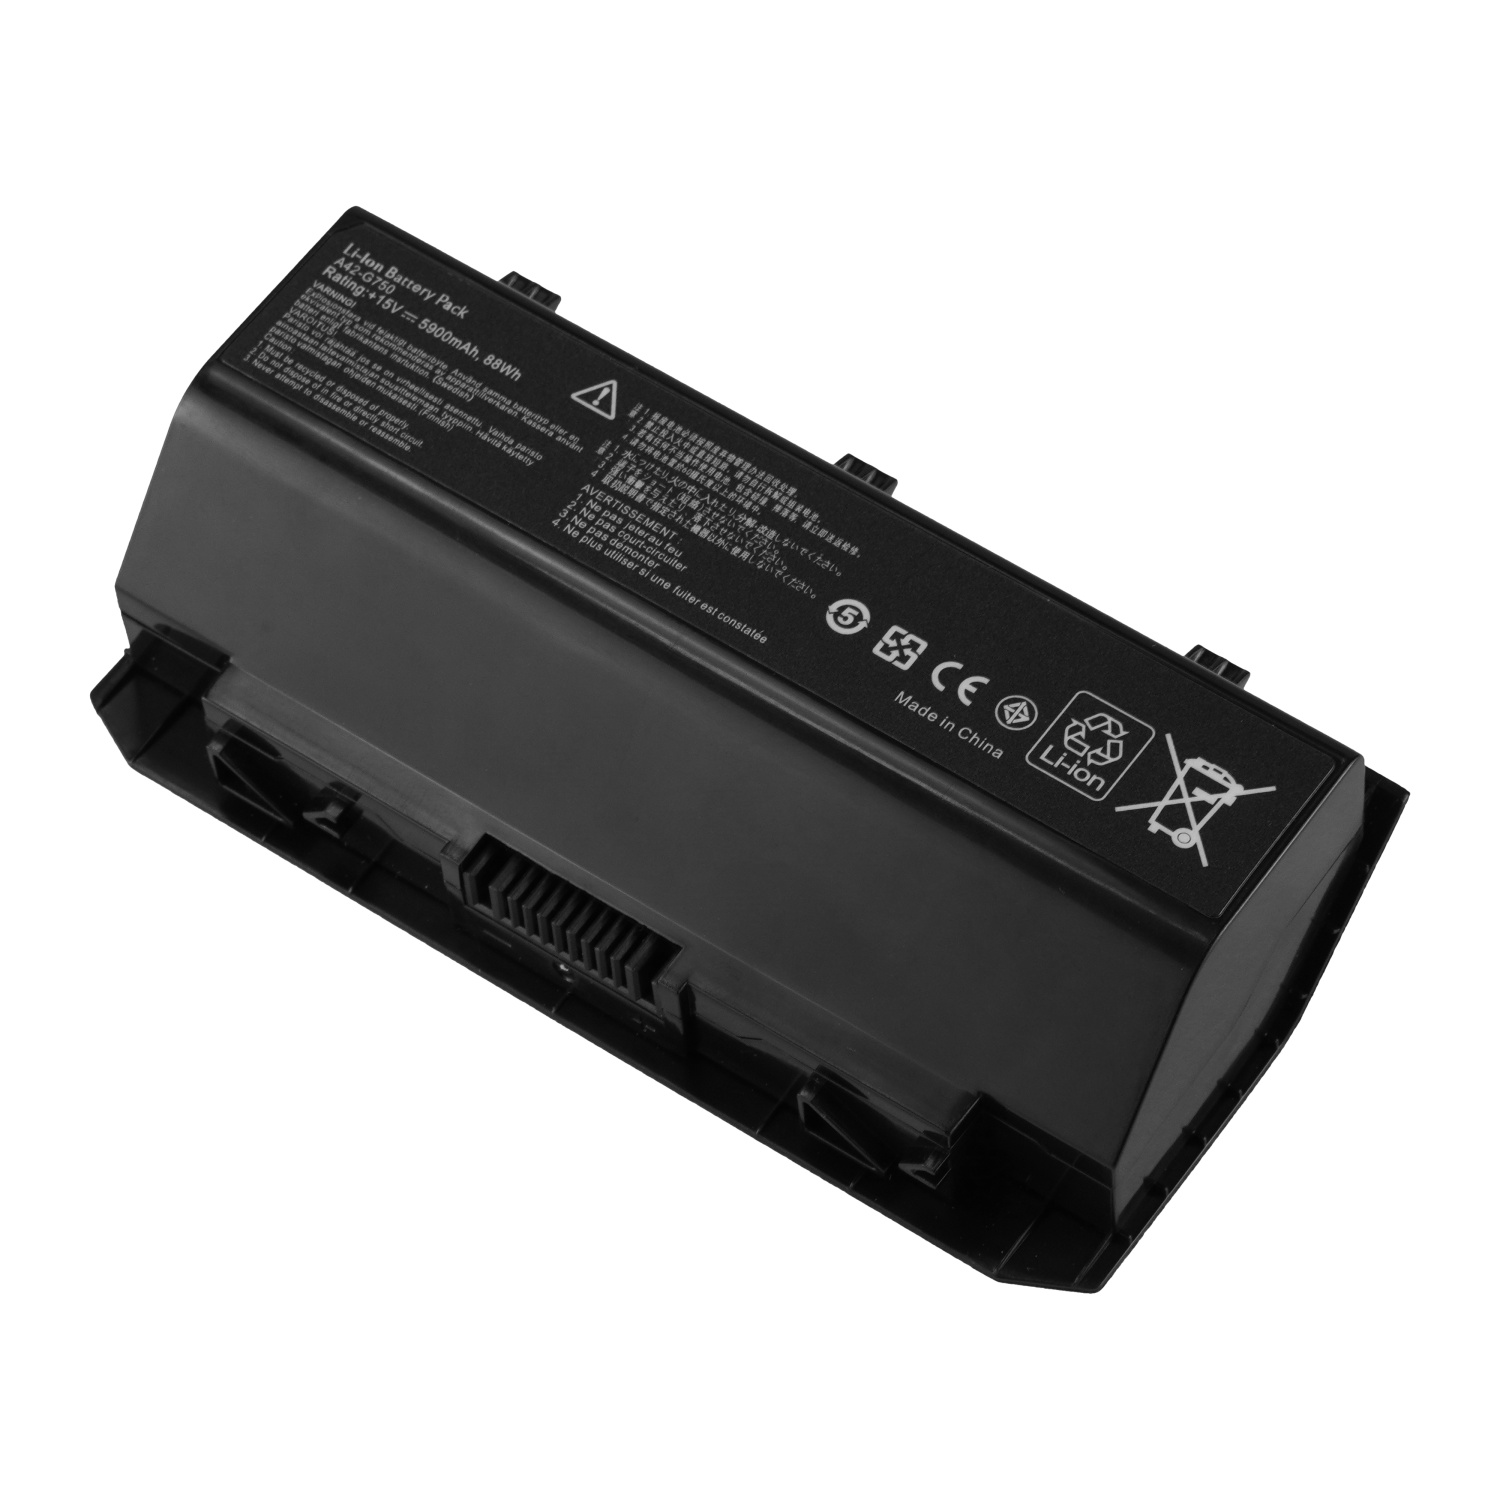 Best Seller OEM Manufacturer laptop battery lithium ion batteries A42-G750 for Asus G750G750JSROG G750ROG G750JS G750JG750JW ROG G750JROG G750JW G750JH G750JXROG G750JHROG G750JX G750JM G750JZROG